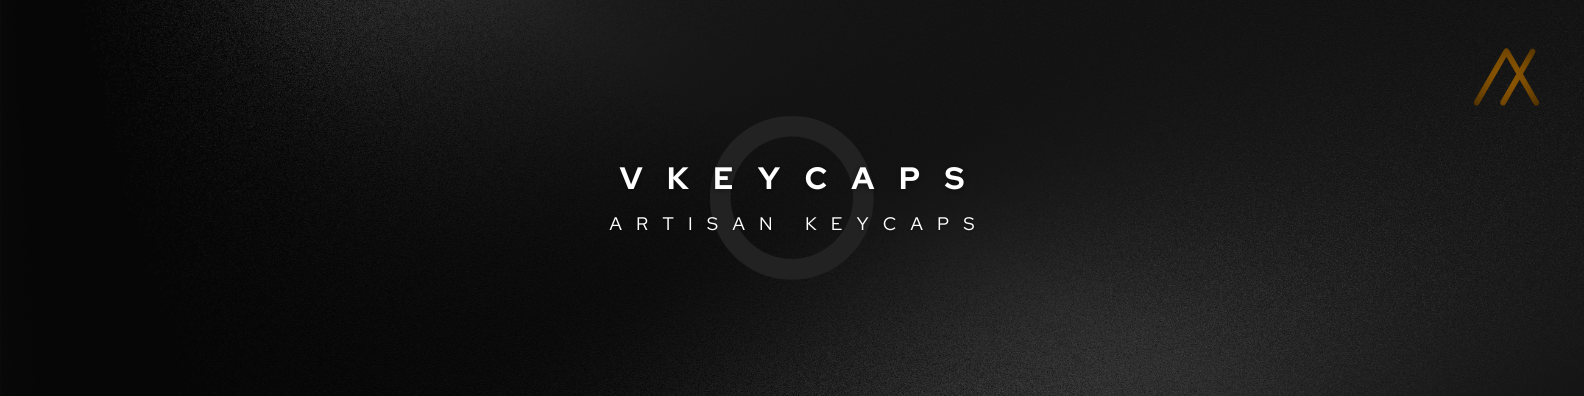 vkeycaps